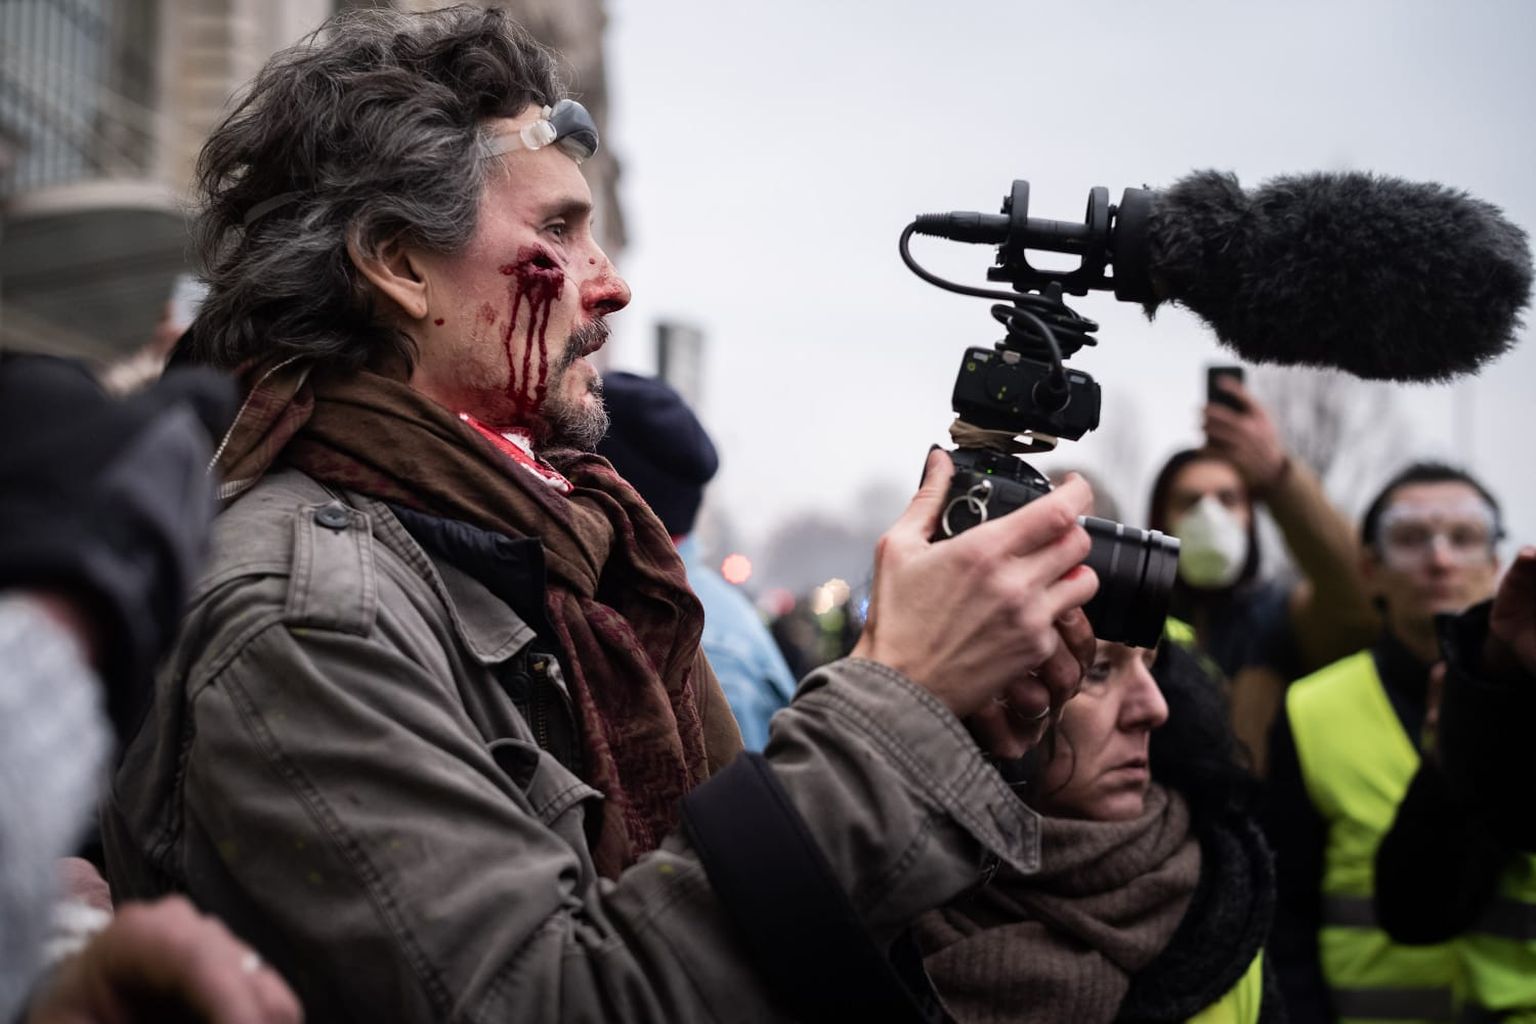 Florent Marcie filmimas 2019. aastal Prantsusmaal nn kollasvestide revolutsiooni. Ta sai kummipüssi lasust haavata.